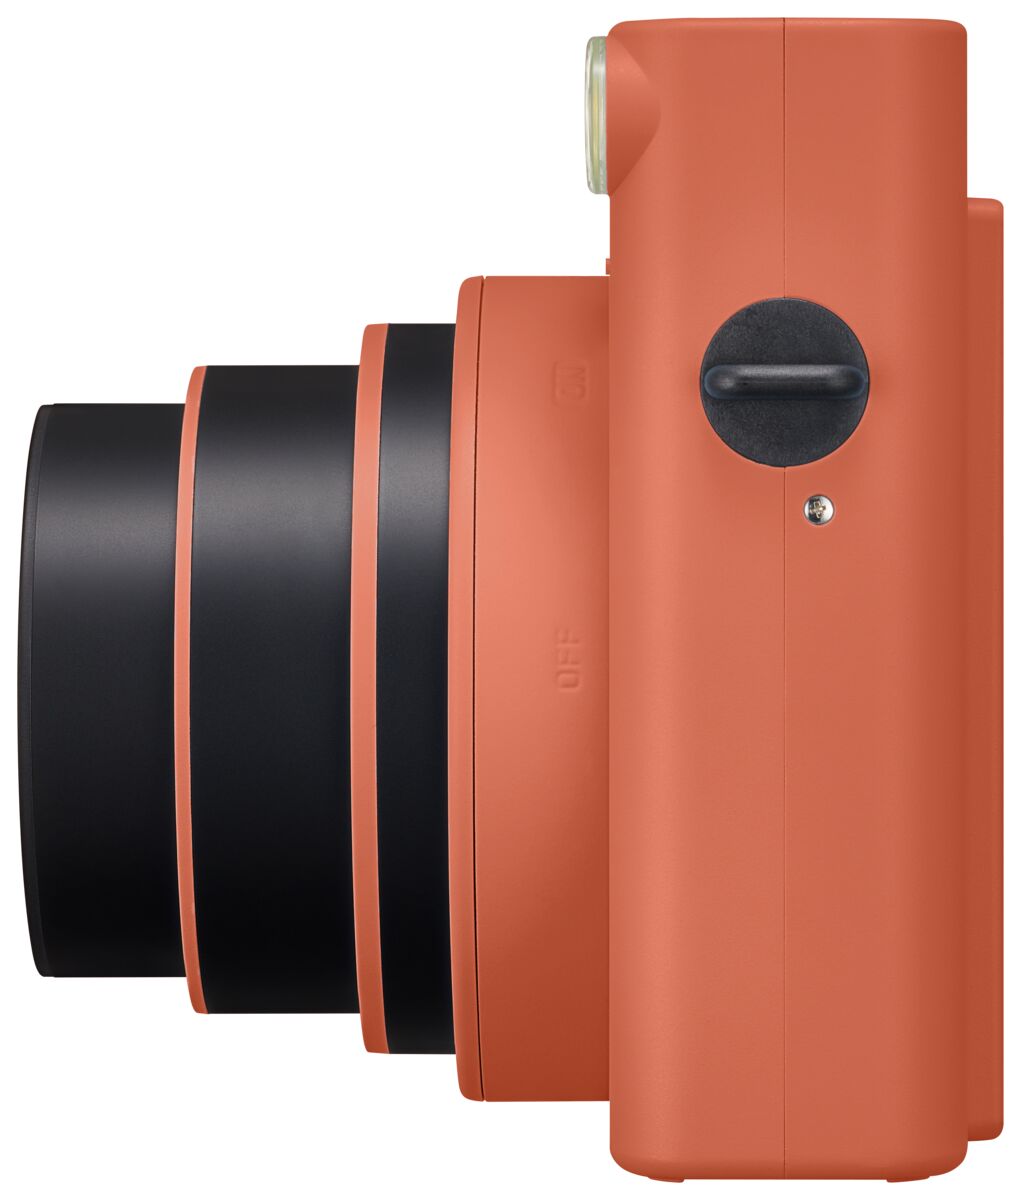 Instax Square Sq1 Terracotta Orange Instant Camera